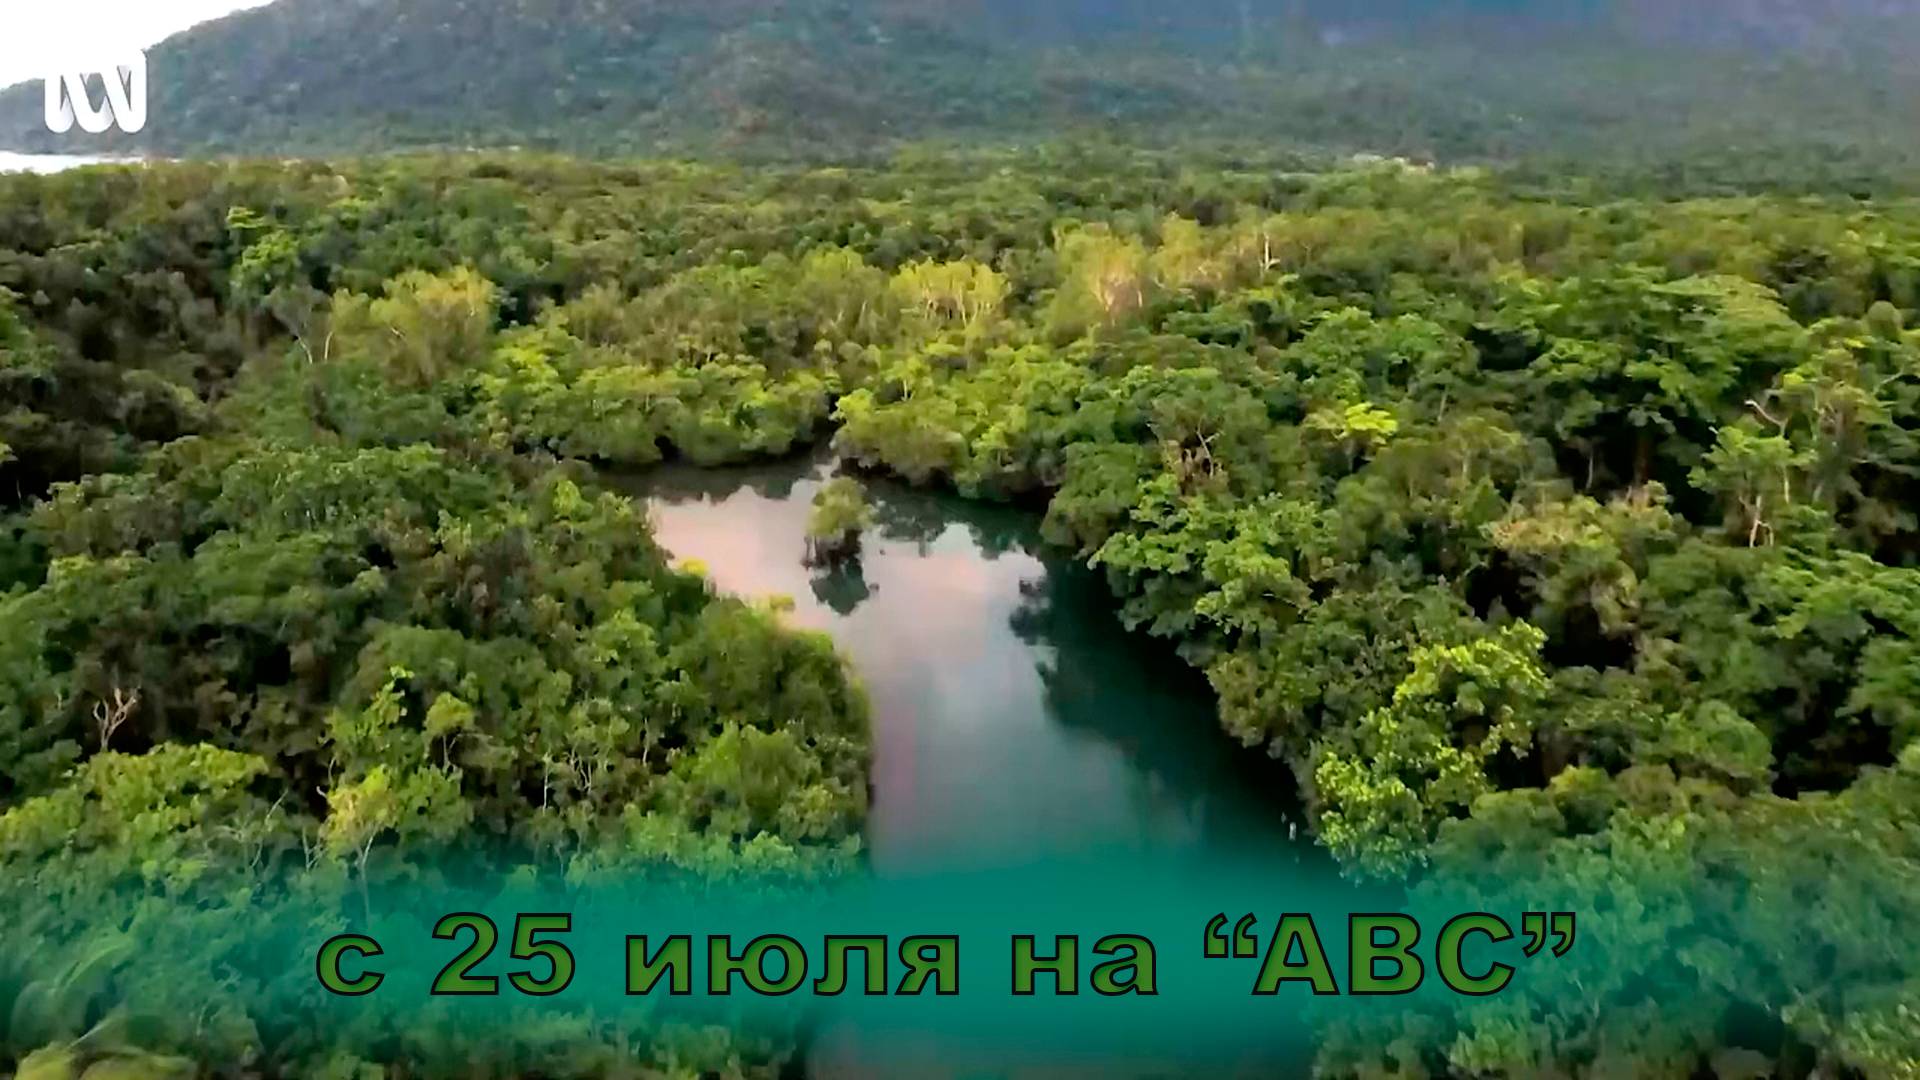 ≪Багровое озеро≫: премьера  2 сезона - 25 июля 2024 г. на "ABC" (трейлер)